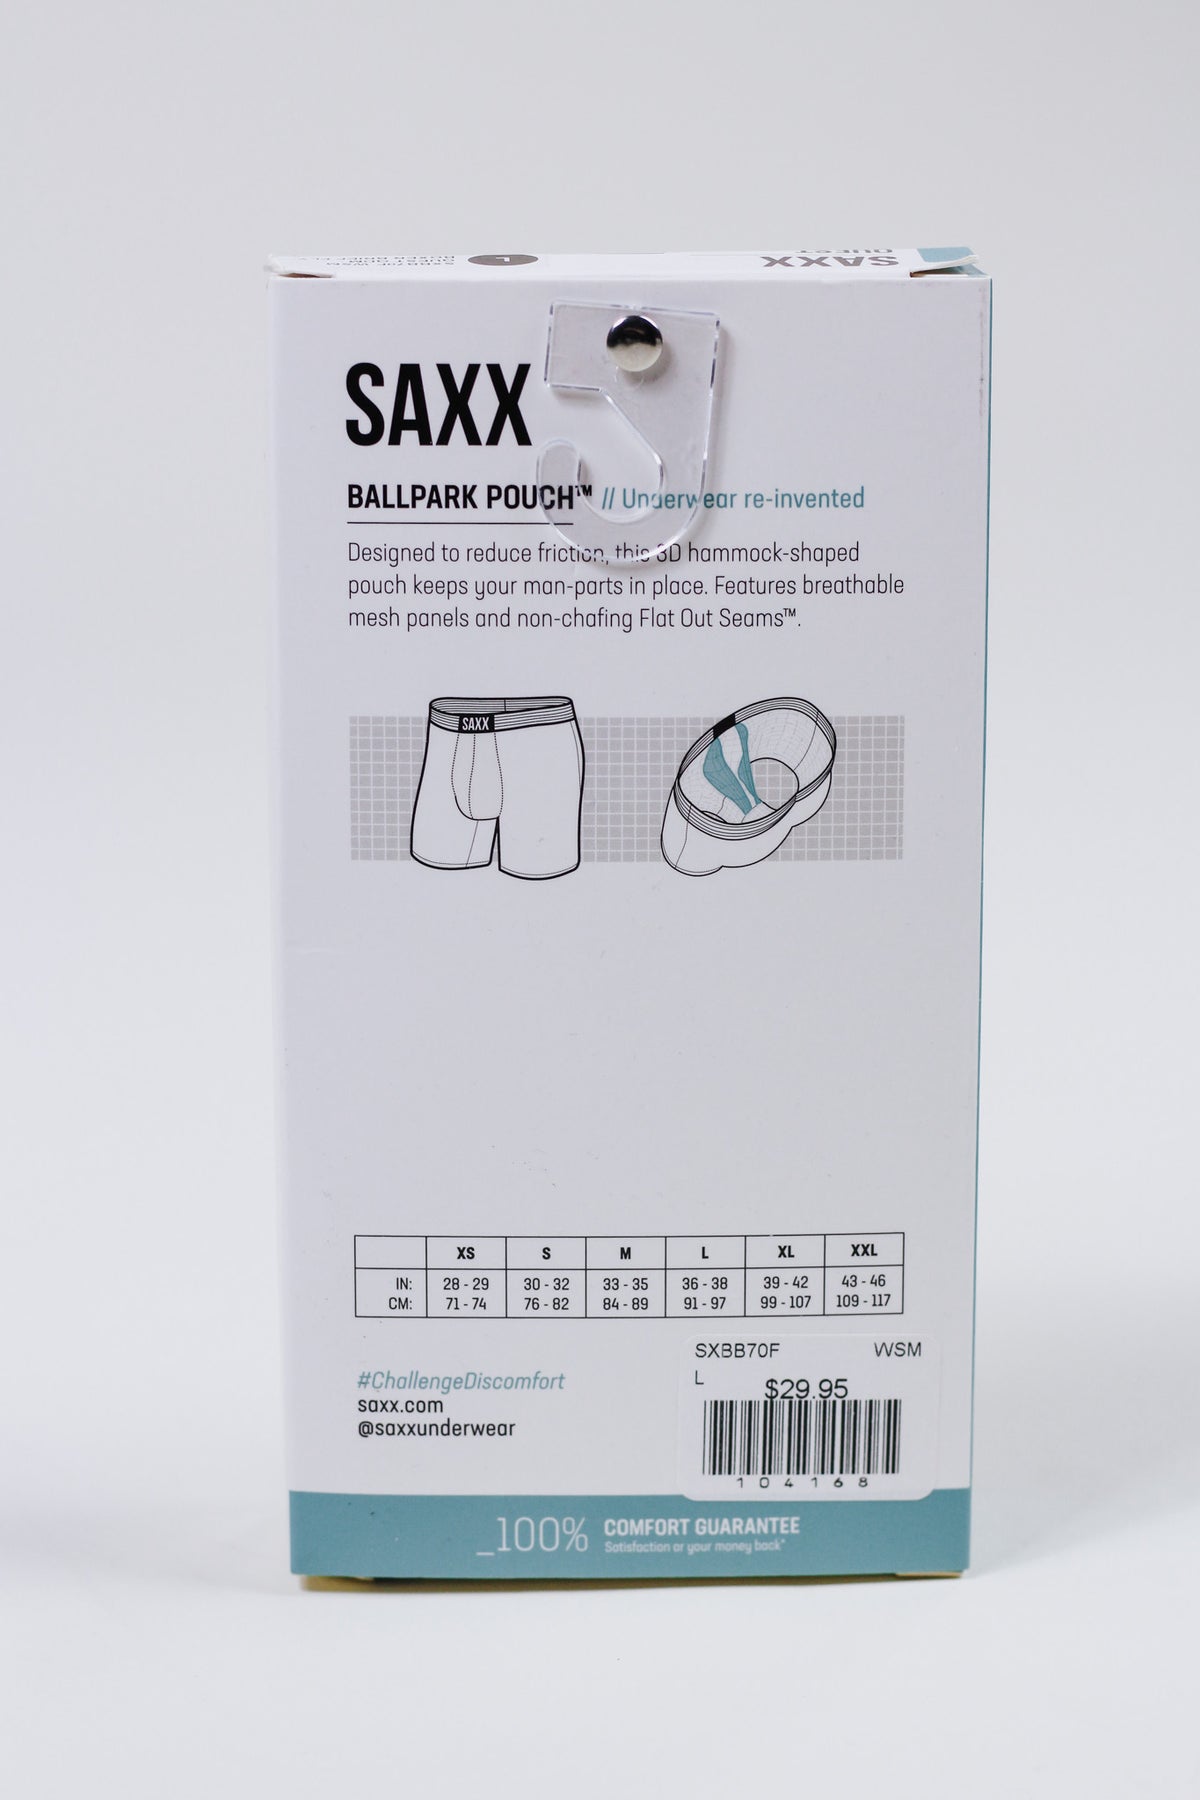 Saxx Quest Red Blue Green Stripe Underwear